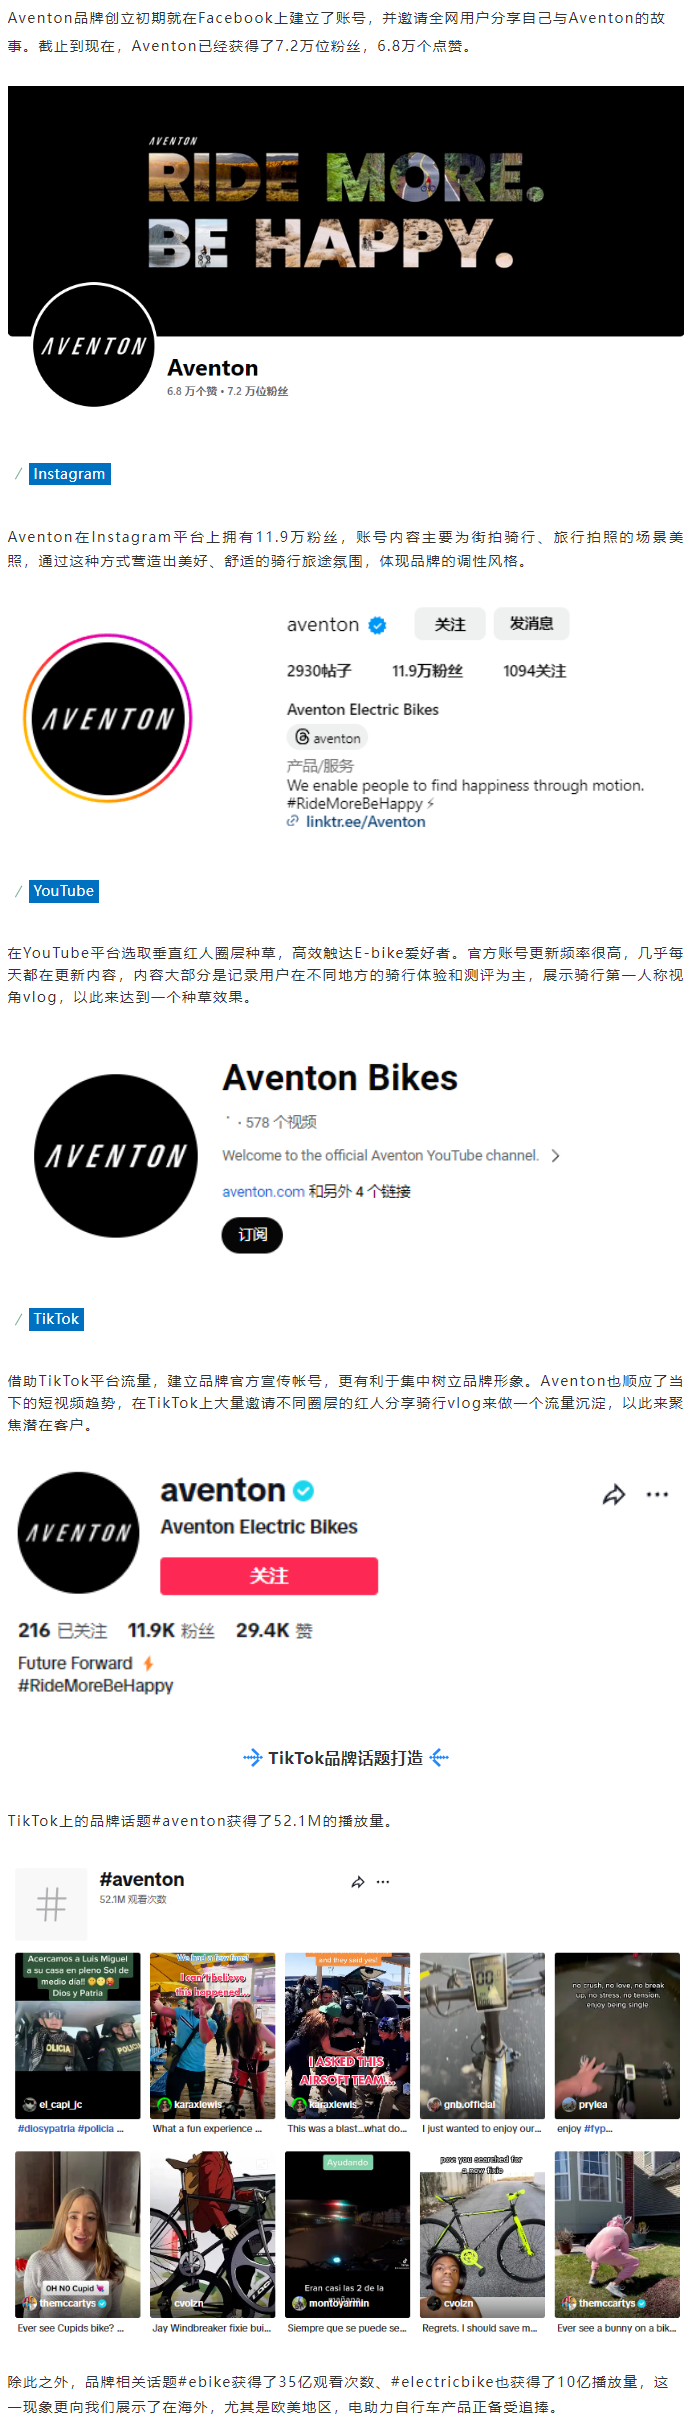 深度解析Aventon如何借助红人营销成功打造成为E-bike领军品牌！